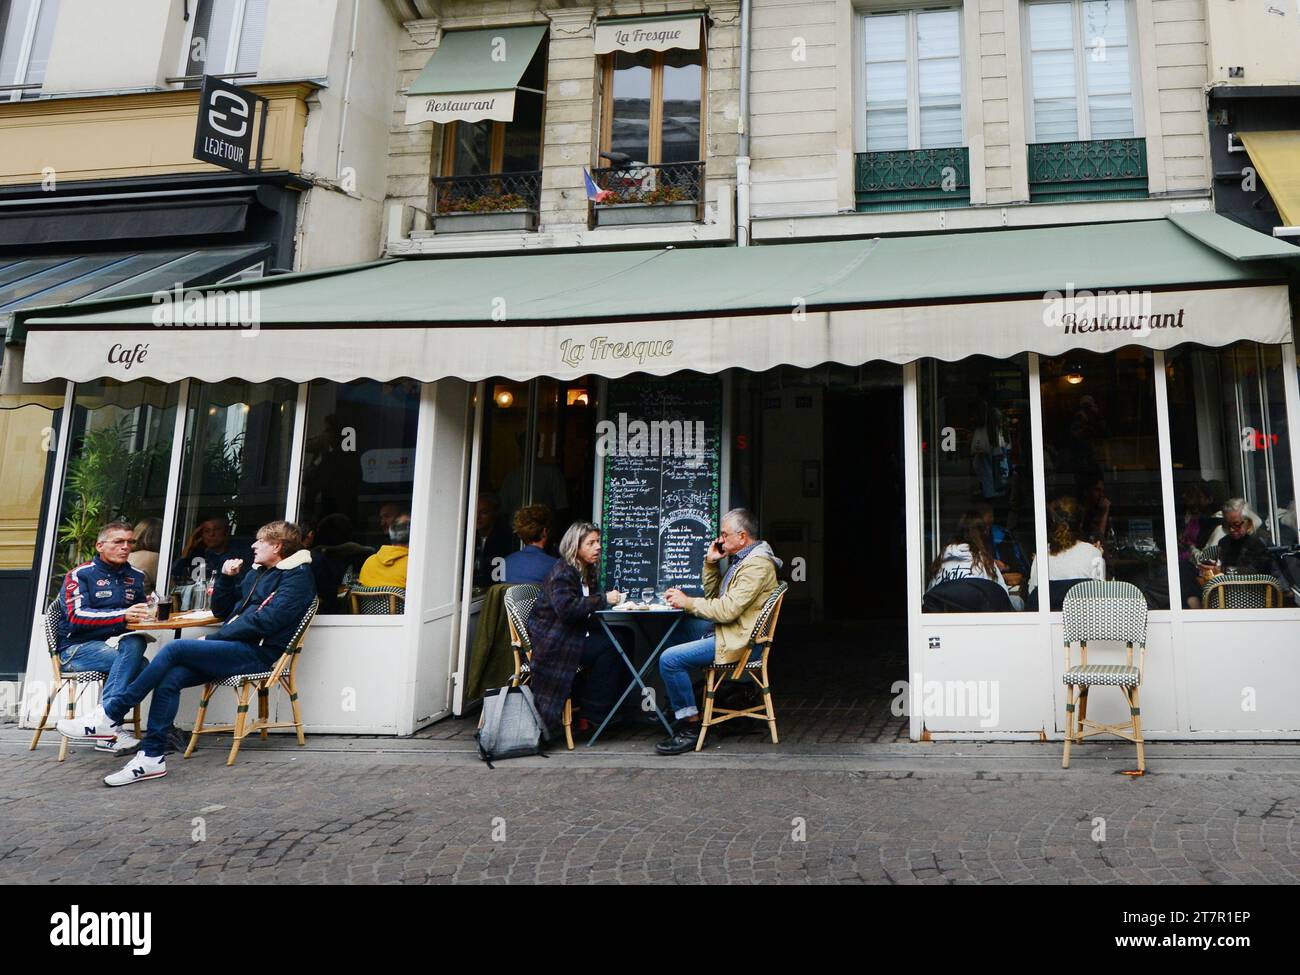 La Fresque restaurant on Rue Rambuteau, Paris, France Stock Photo